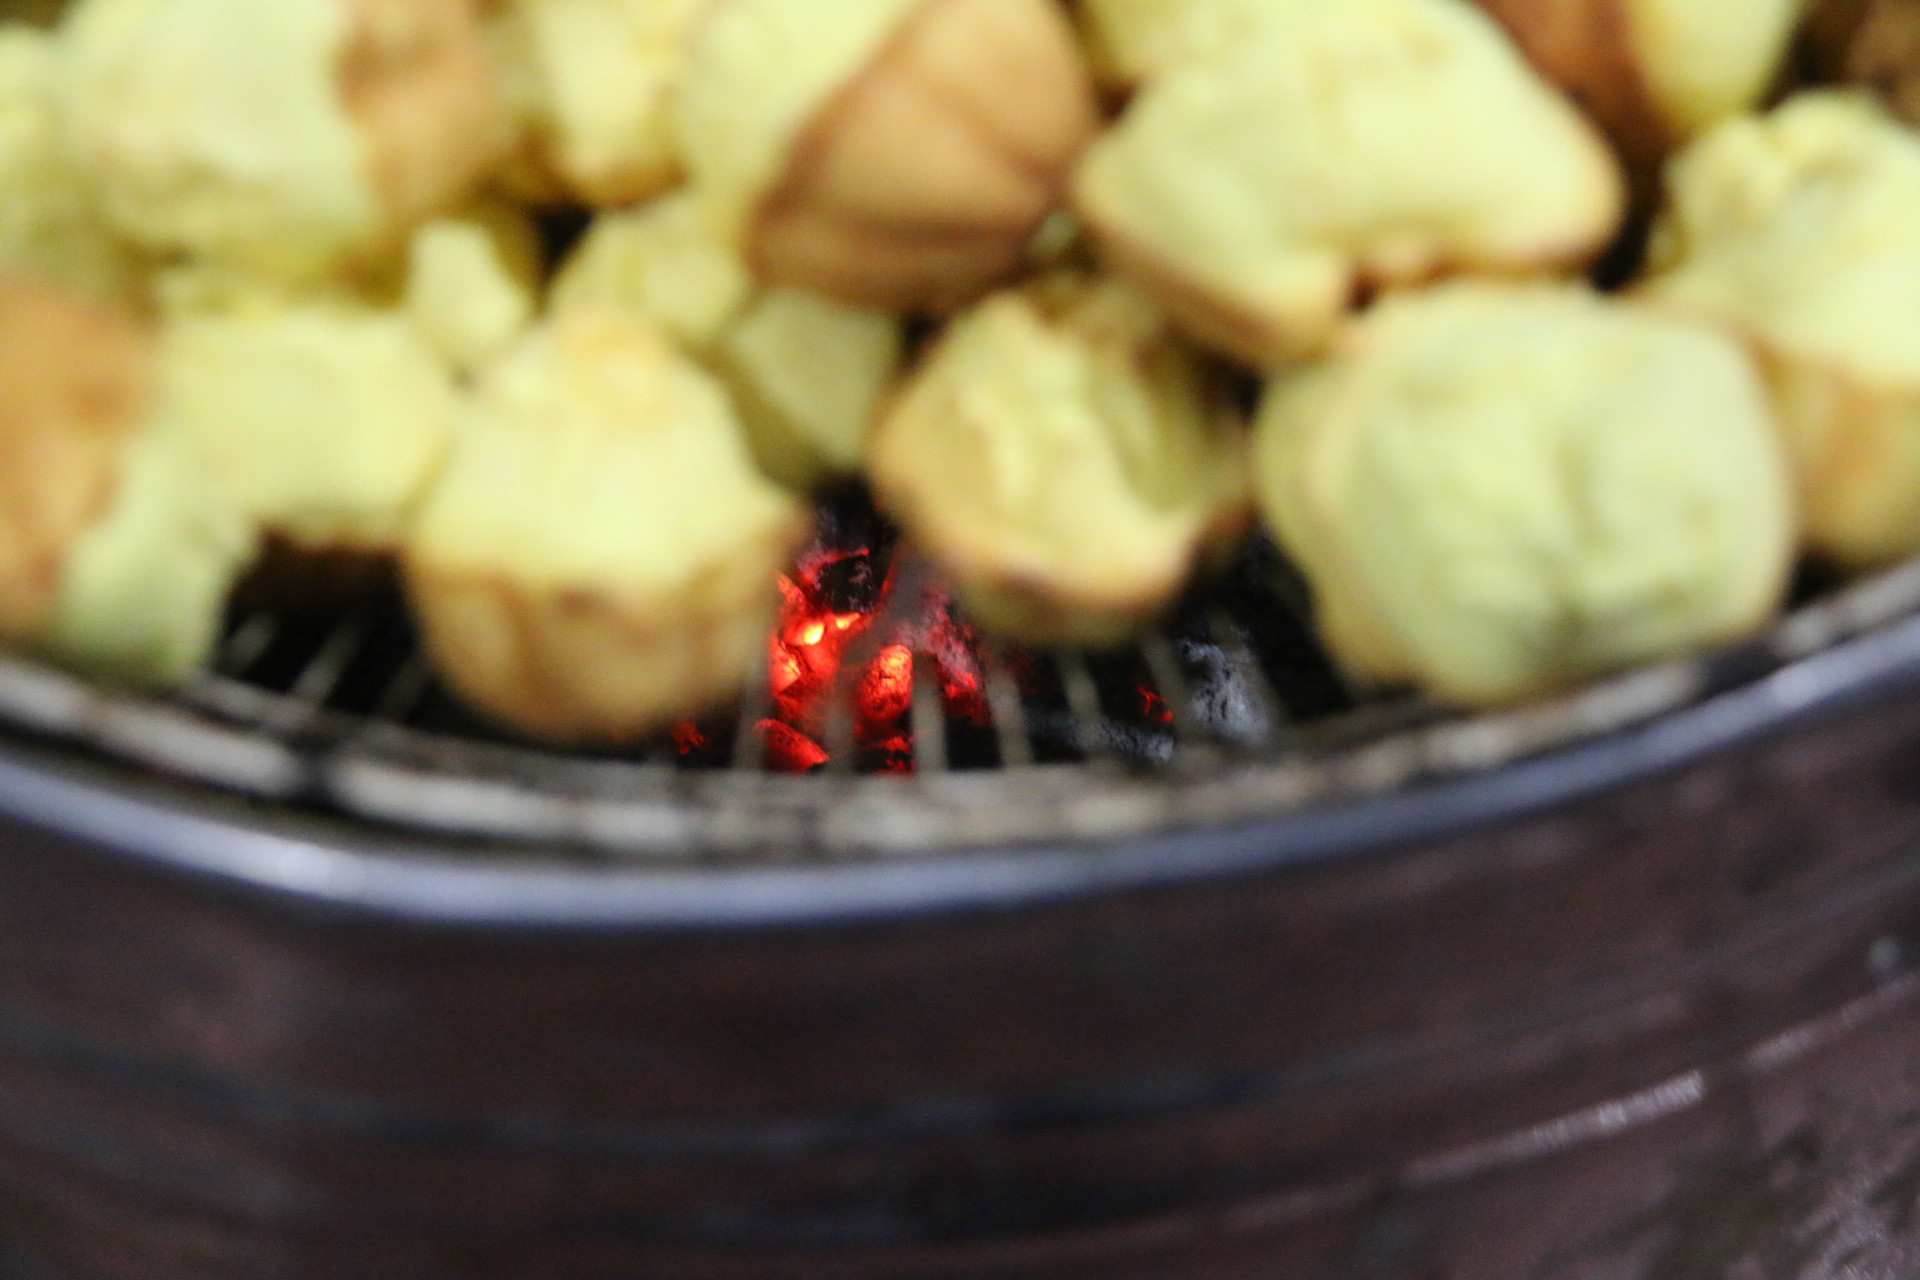 Hong trên bếp than là công đoạn cuối cùng của việc làm bánh thuẫn.